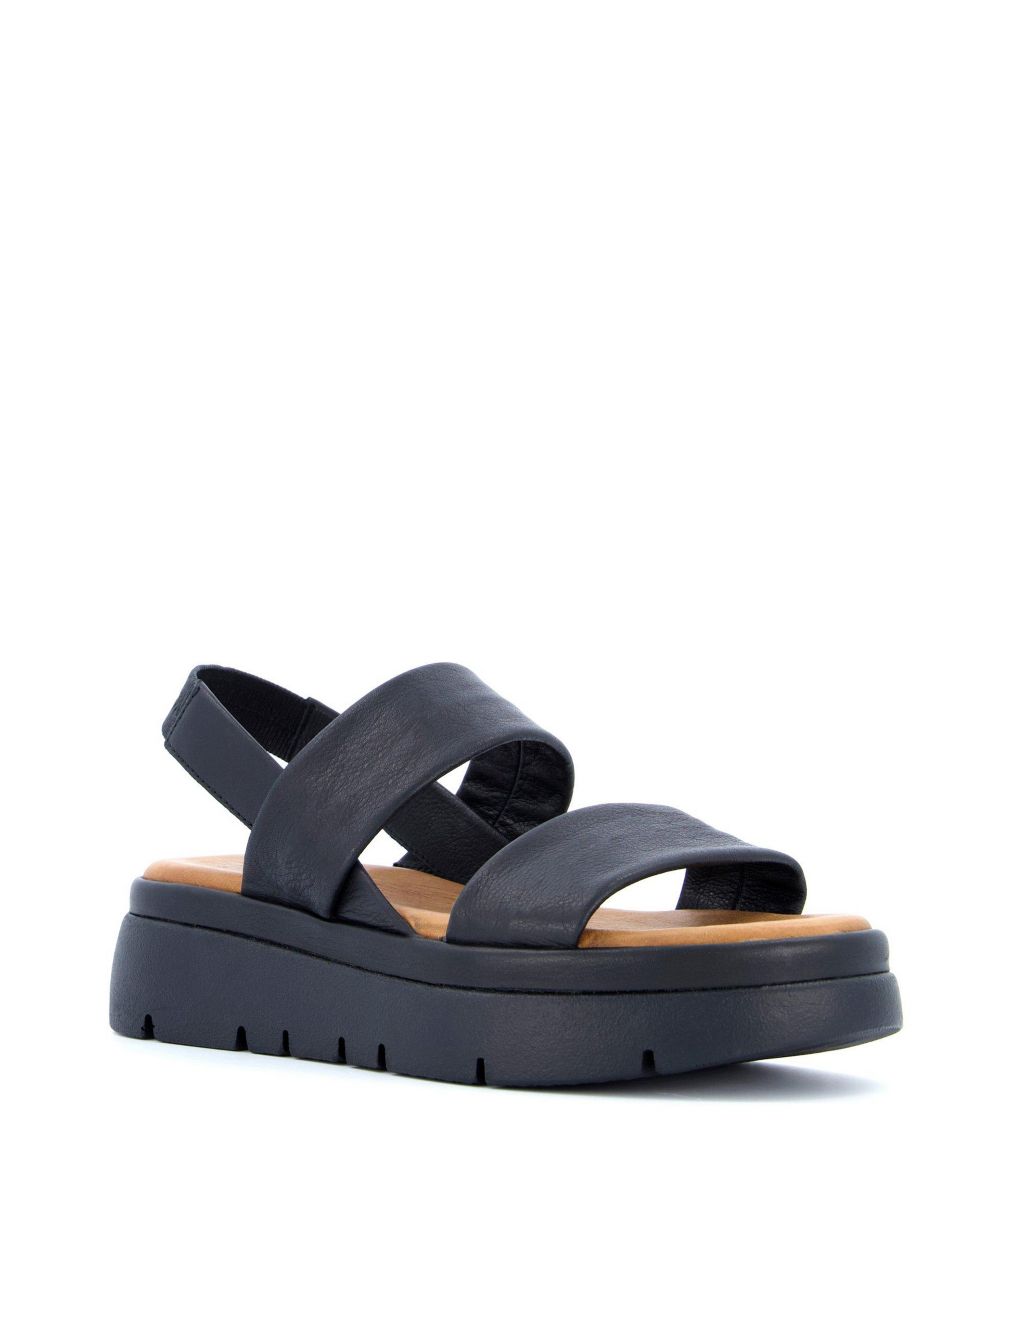 Shop Women’s Slingback Sandals | M&S